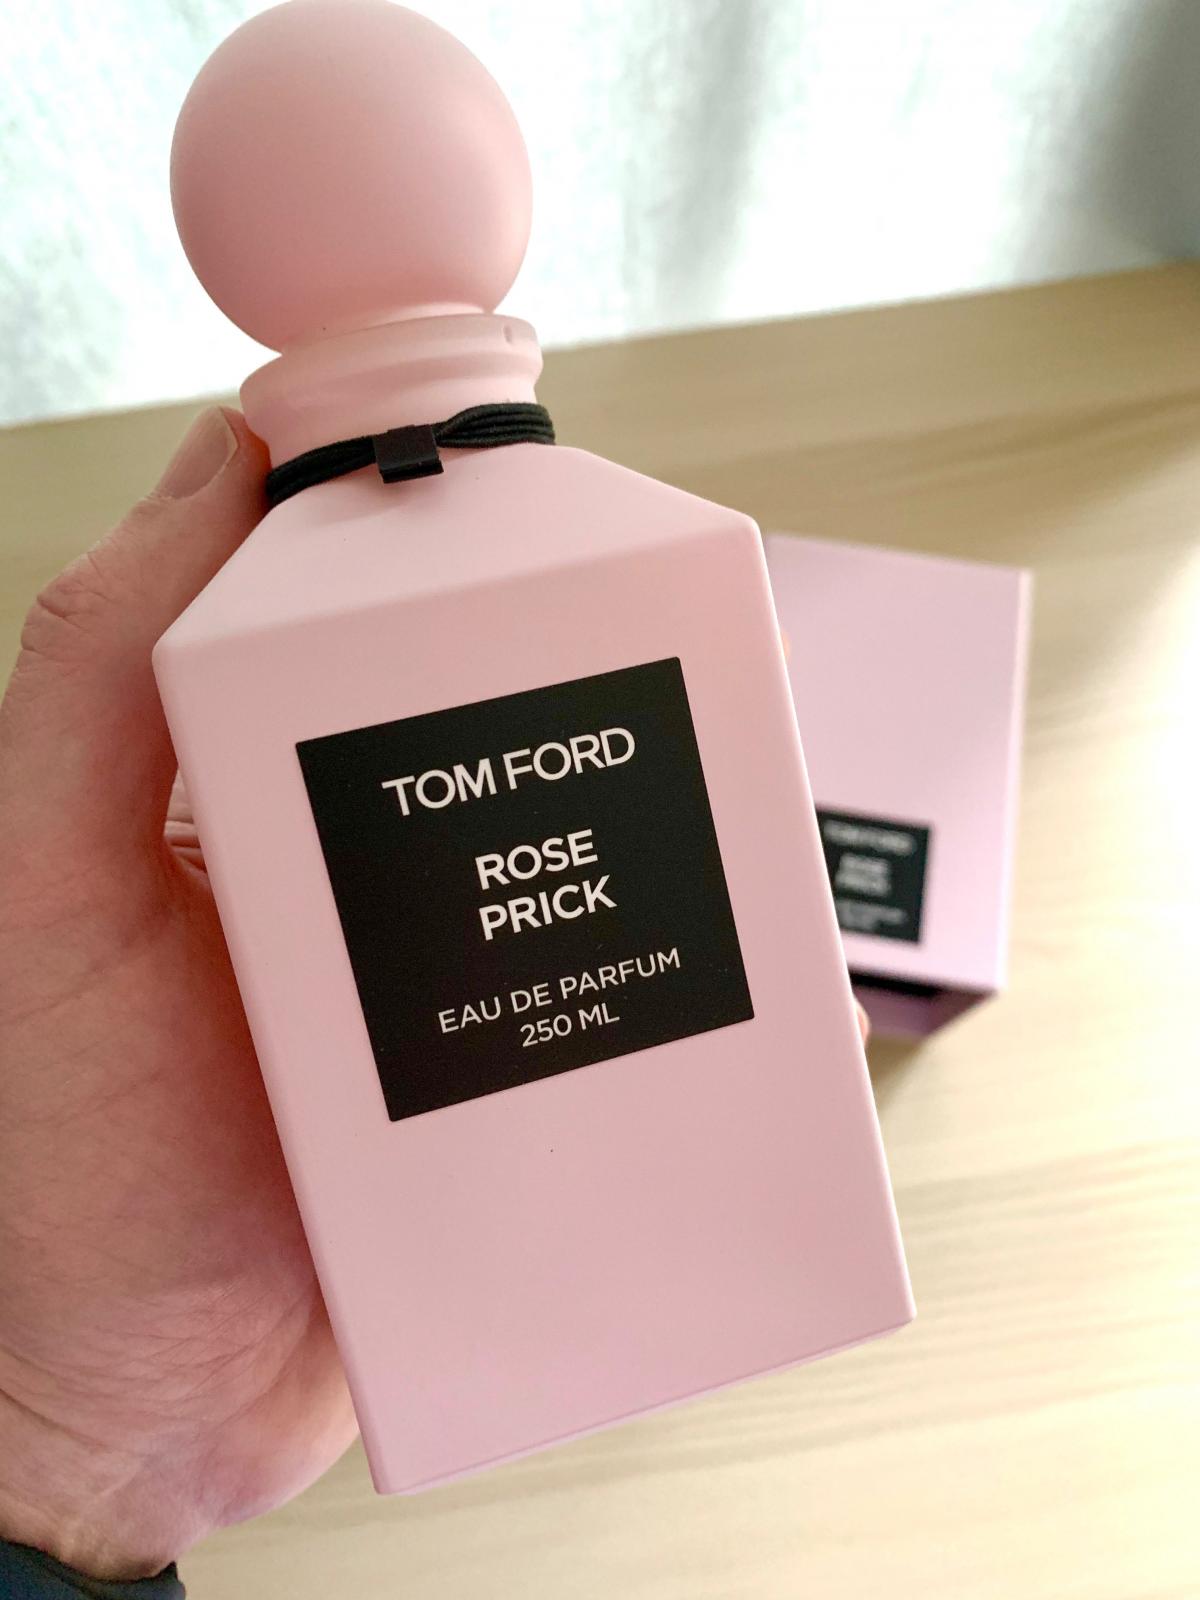 Rose Prick Tom Ford Parfum - ein neues Parfum für Frauen und Männer 2020